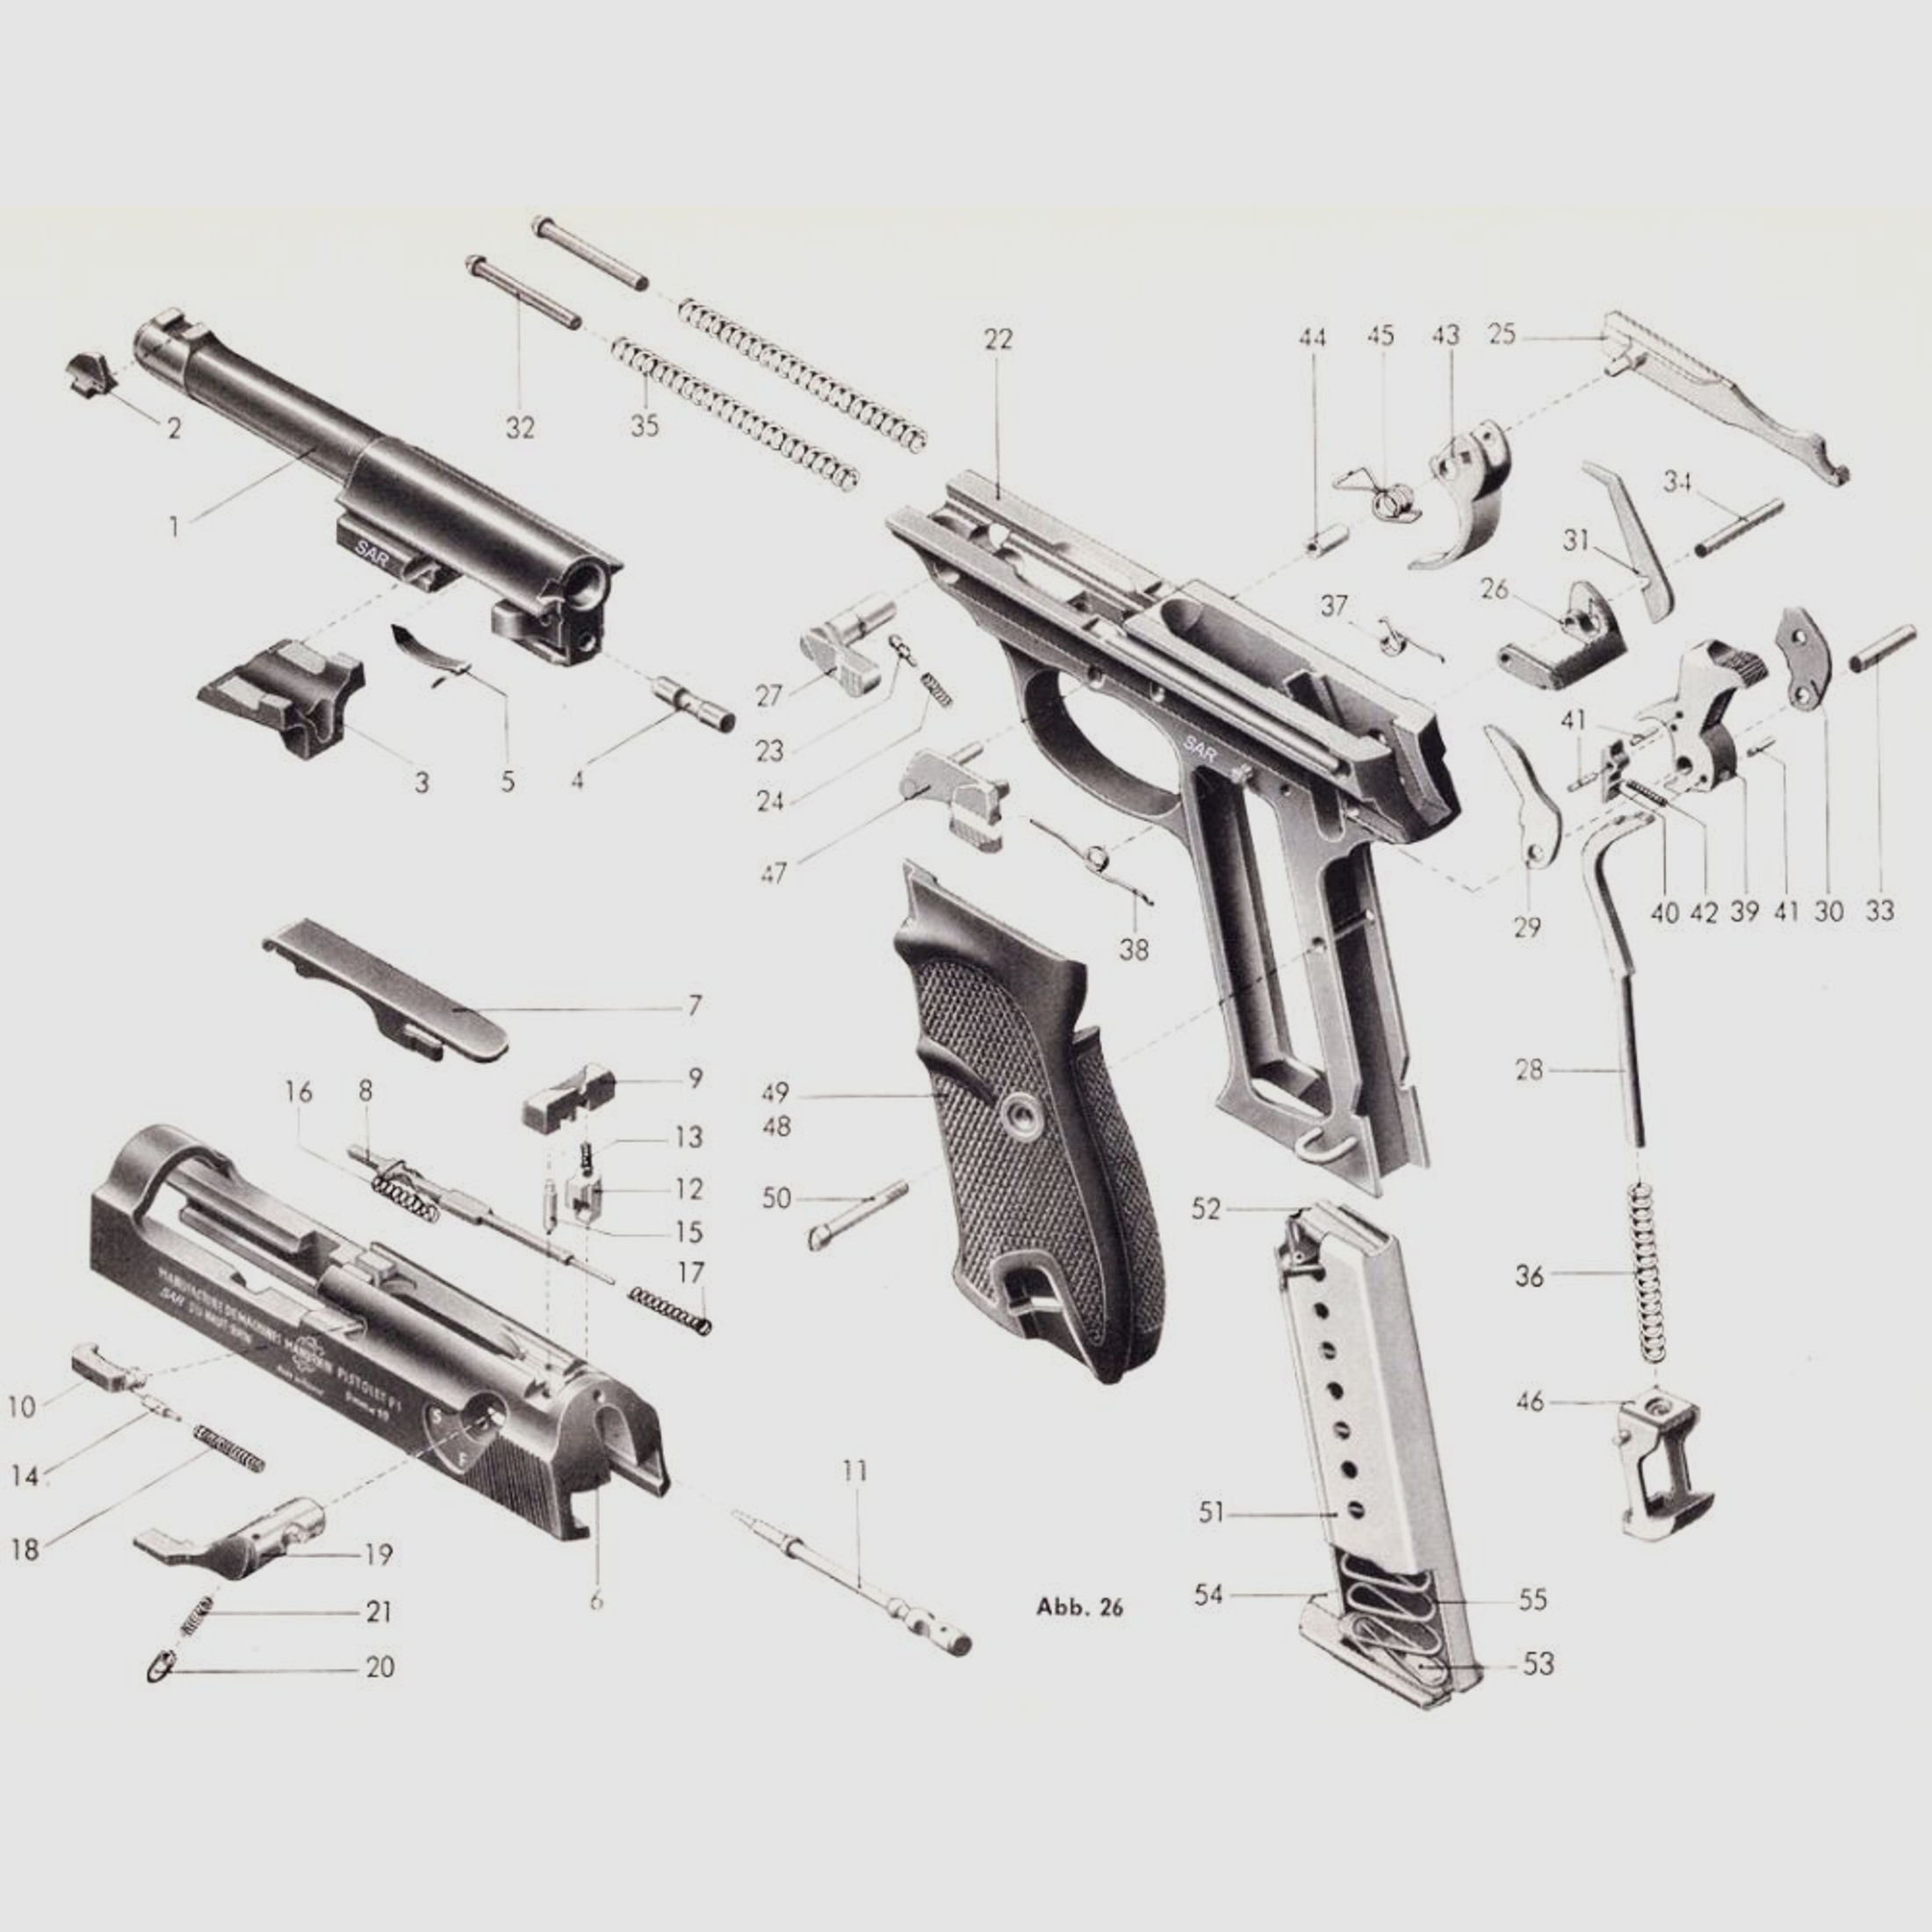 Walther	 Auswerfer [31] Gebraucht für Walther Pistole P38 / P1